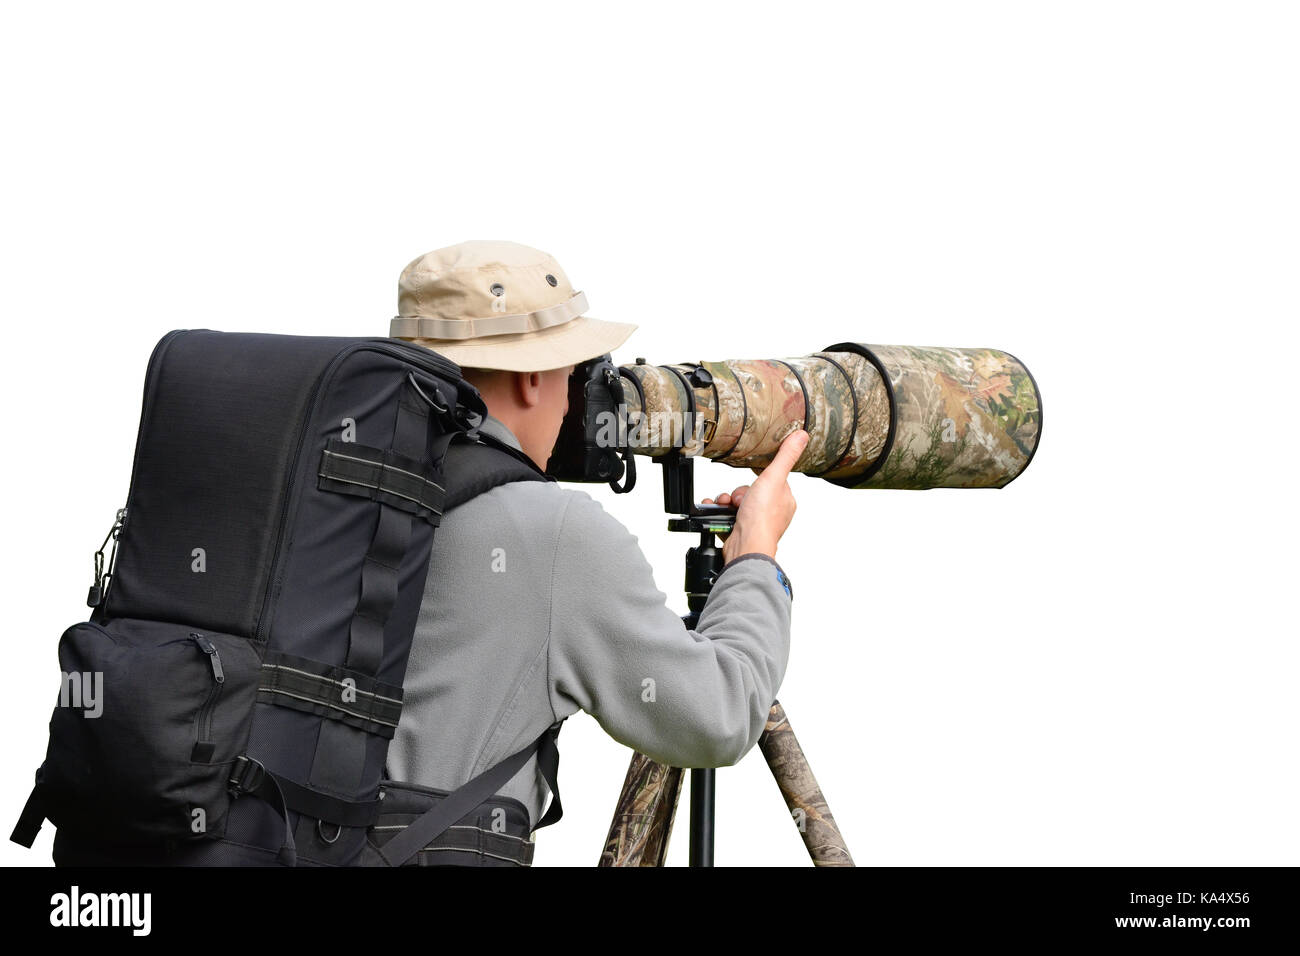 Professional wildlife photographer isolated on white background Stock Photo